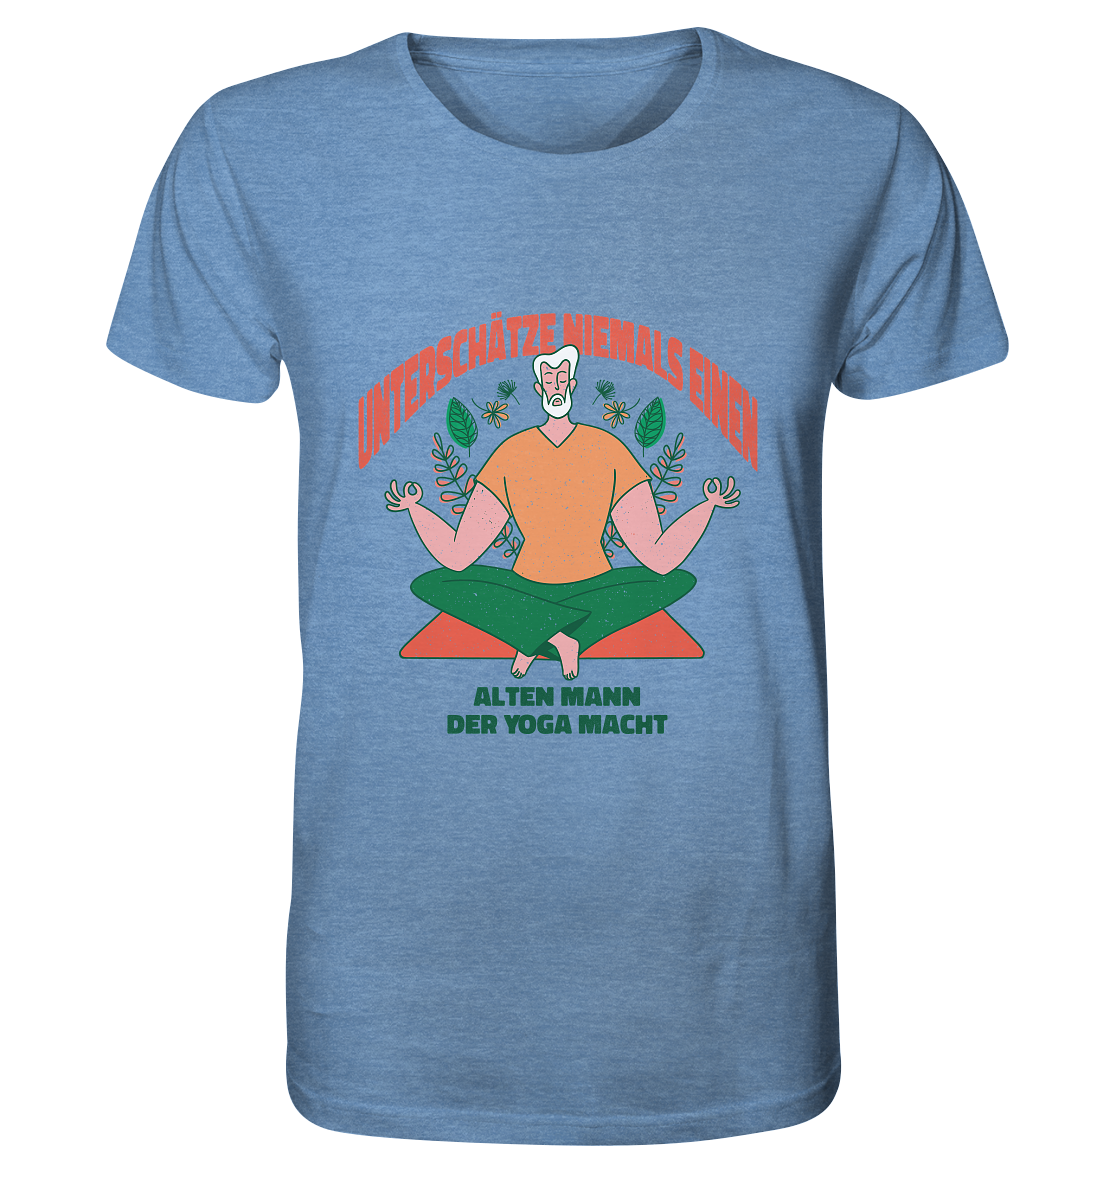 Unterschätze niemals einen alten Mann Yoga - Organic Shirt (meliert) - Online Kaufhaus München